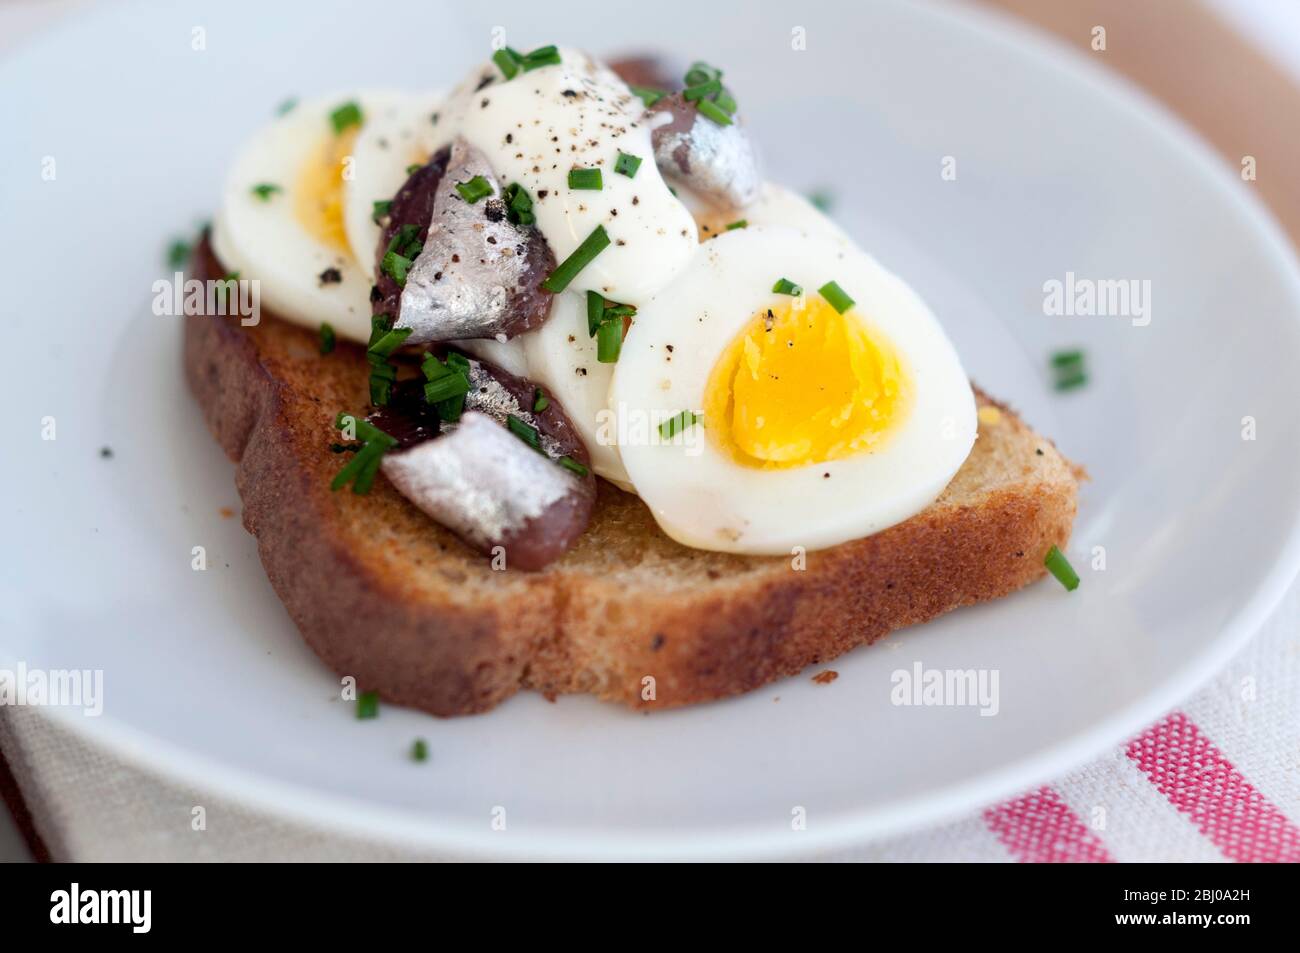 Ein schwedisches klassisches Sandwich mit offenem Gesicht mit geschnittenem, hartgekochtem Ei, gekrönt mit Schwedischen Ansjovis (eingelegte Sprossen), bestreut mit gehacktem Schnittlauch. Stockfoto